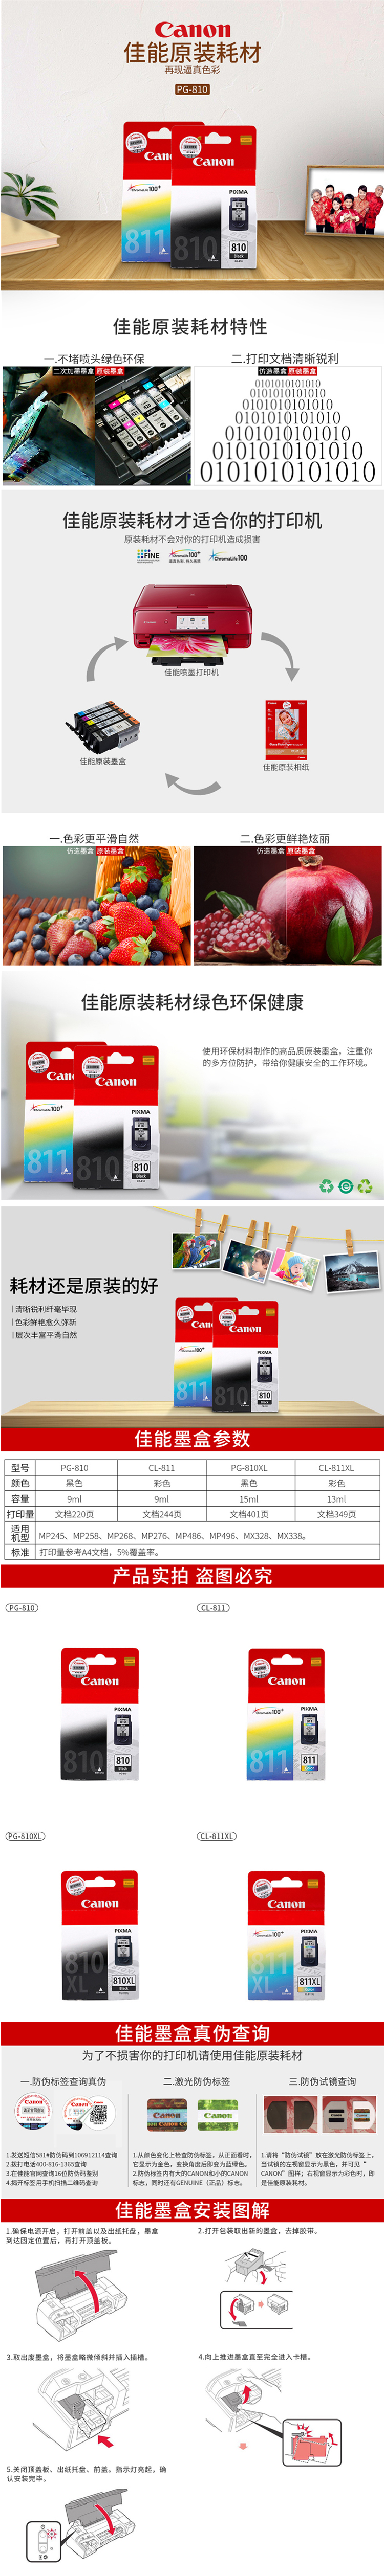 佳能（中国）-EOS数码单反相机 － EOS 80D － 产品特征 － 高性能自动对焦.png